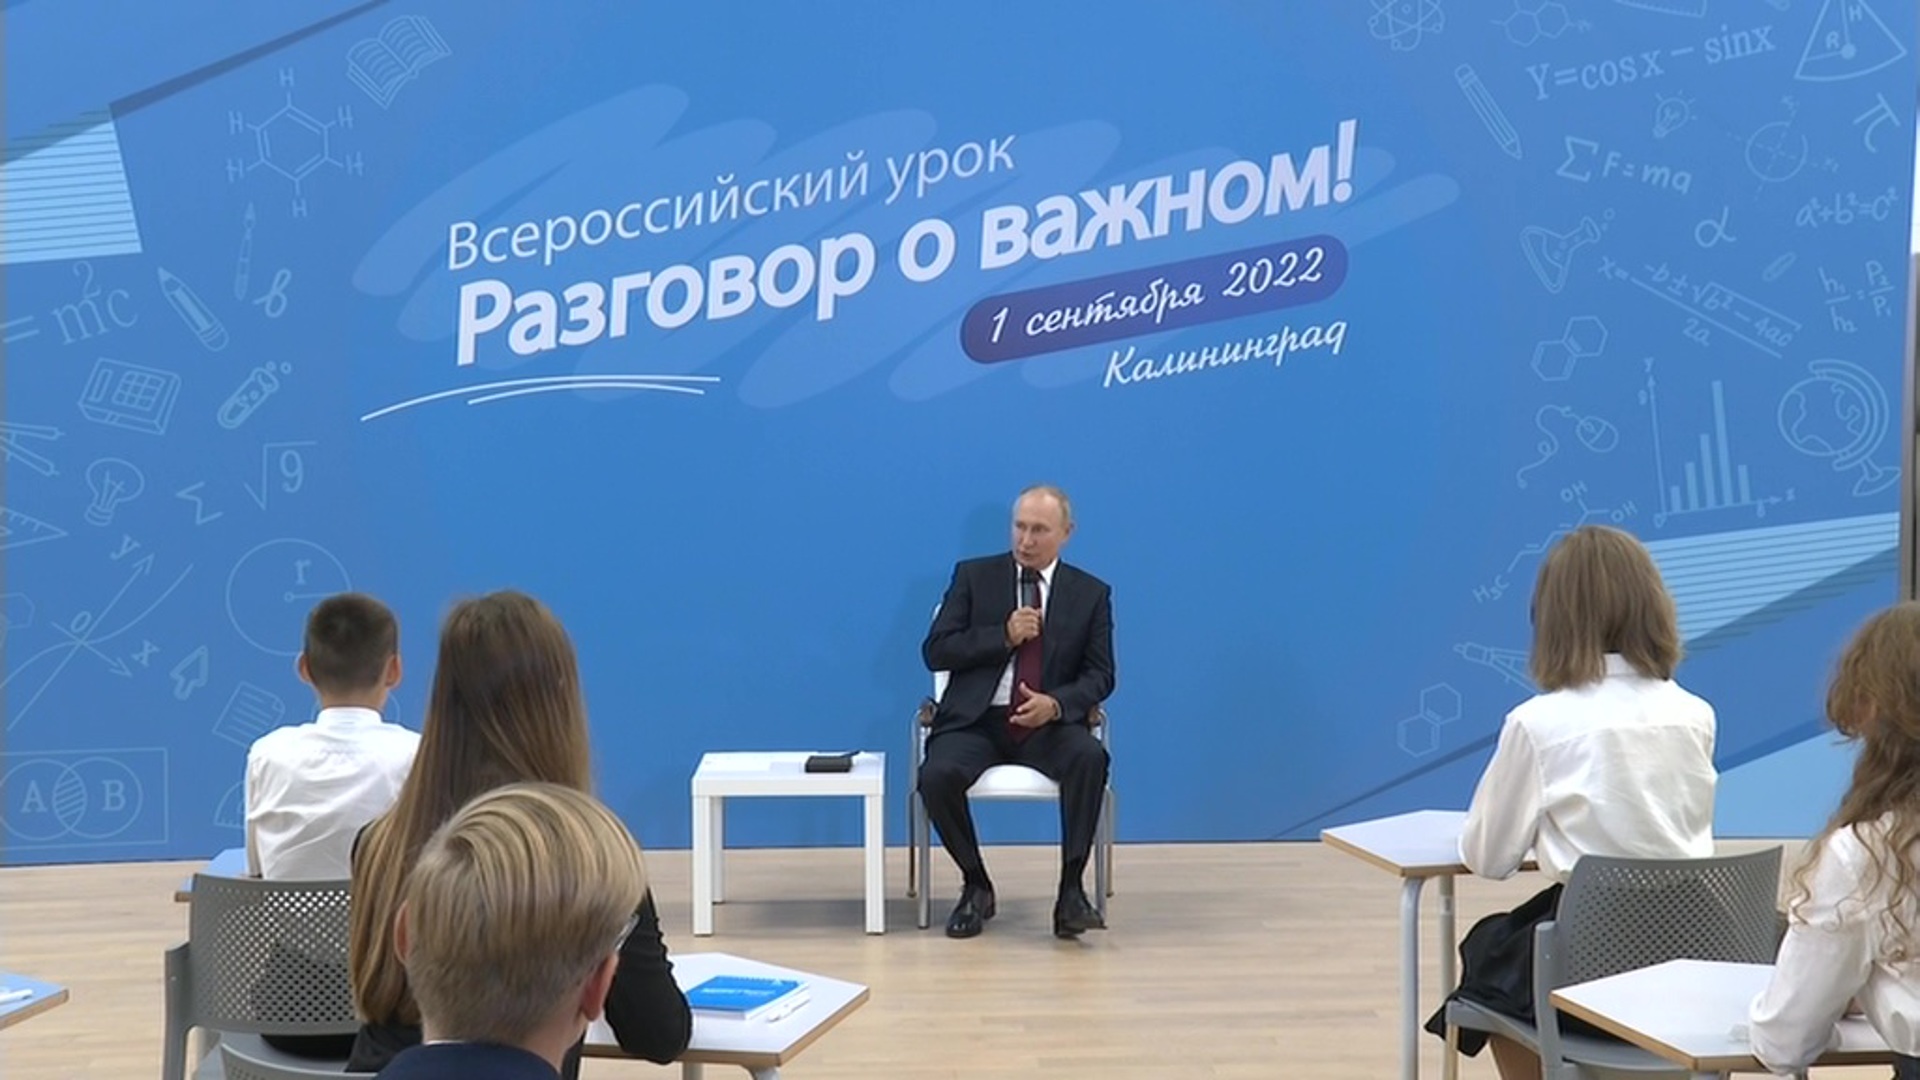 Картинка с первым 2024. Открытый урок разговоры о важном с Владимиром Путиным. Разговор о важном с президентом 1 сентября 2022. Разговоры о важном.